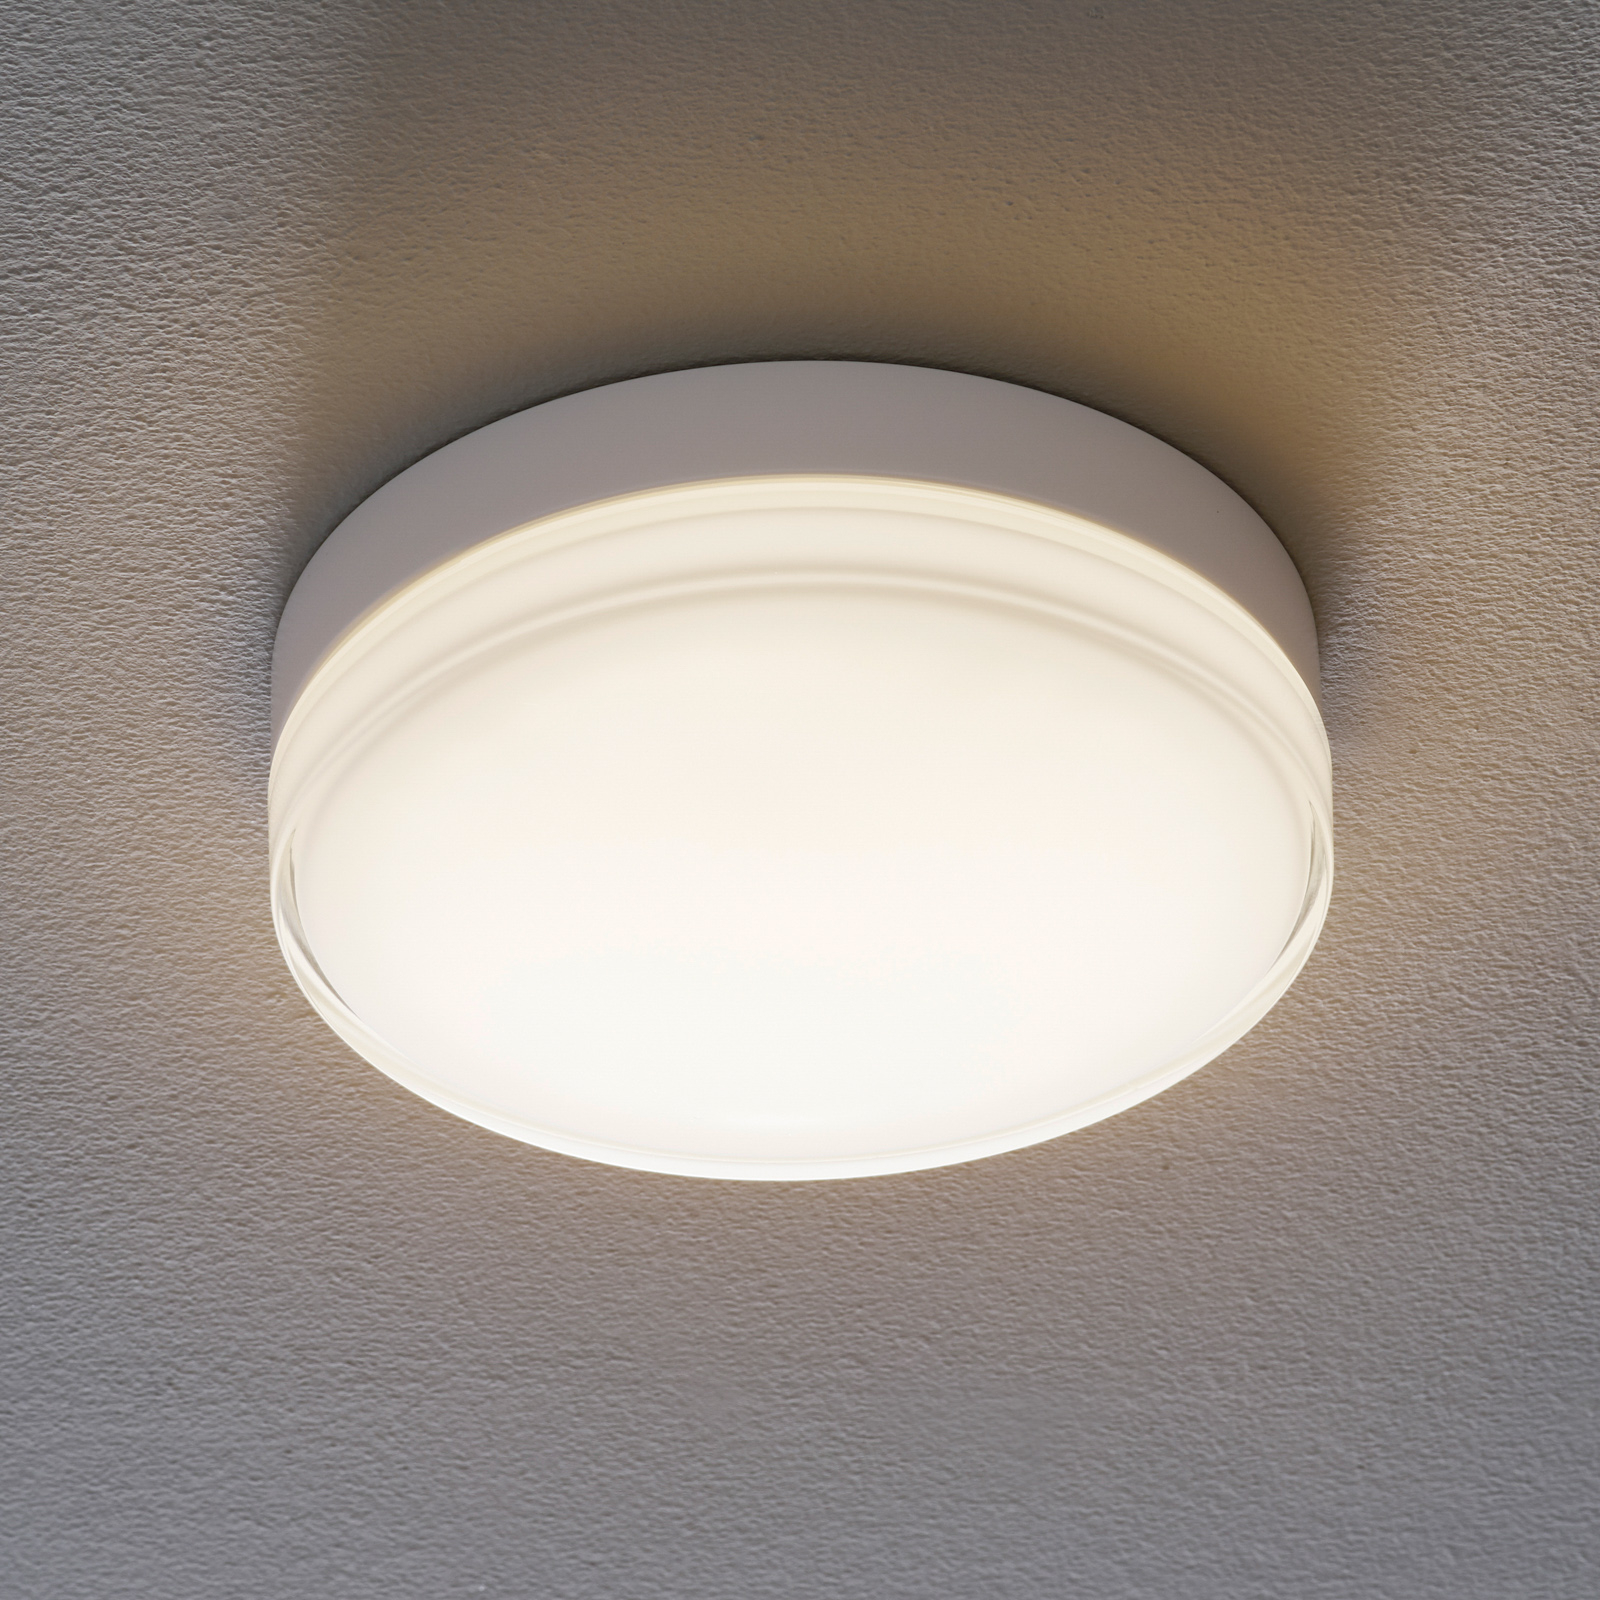 BEGA 12127/12128 LED ceiling light DALI 930